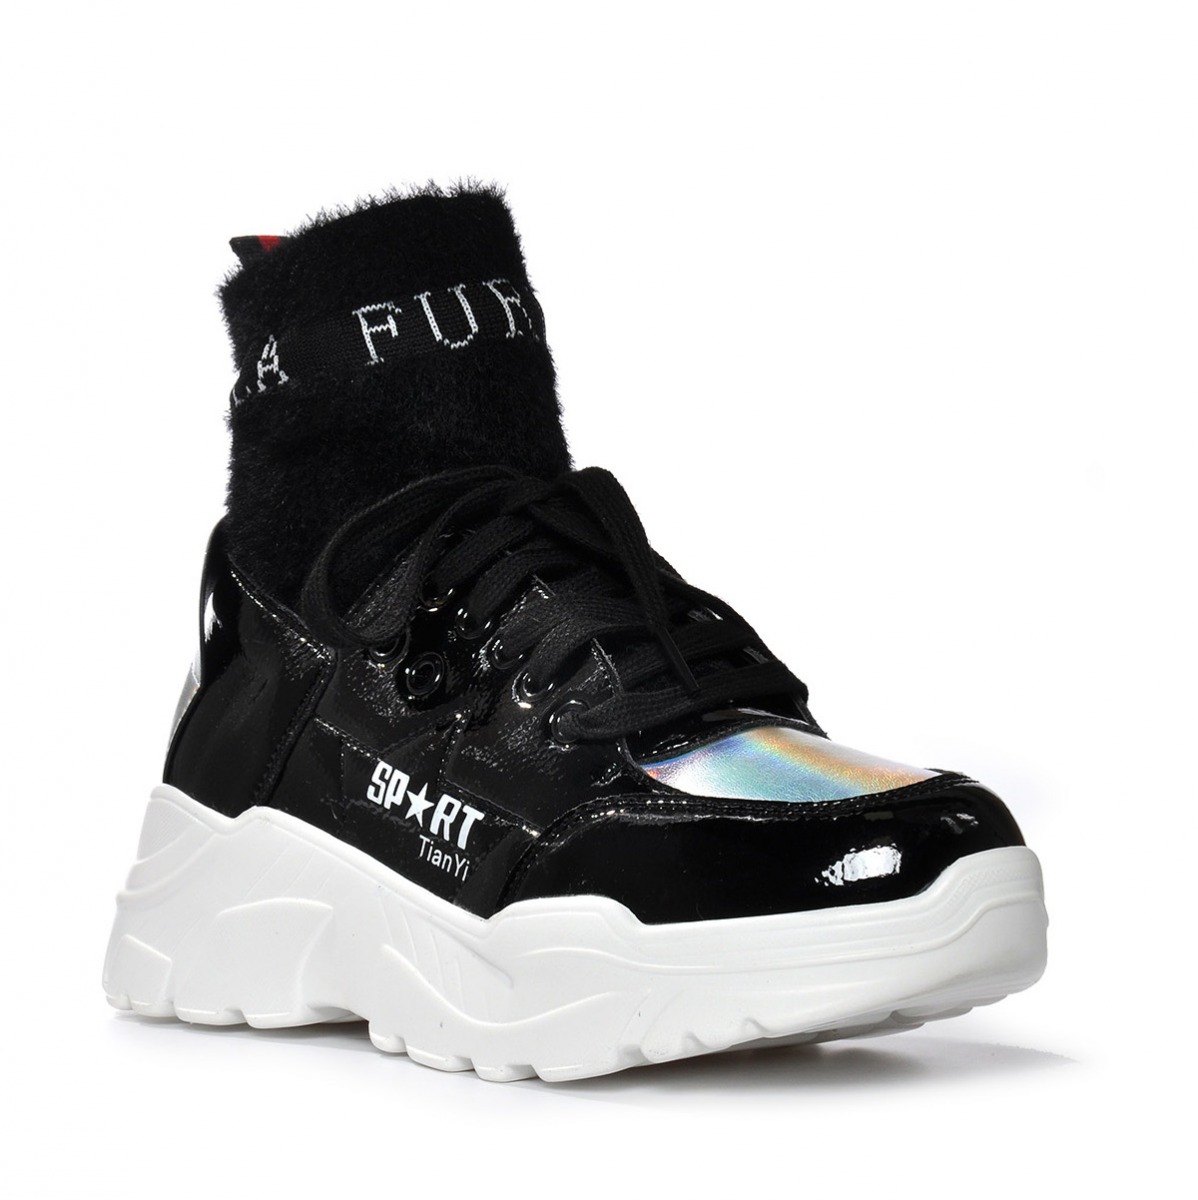 Flo Kadın Siyah Spor Sneaker Ayakkabı VZN19-084K. 2